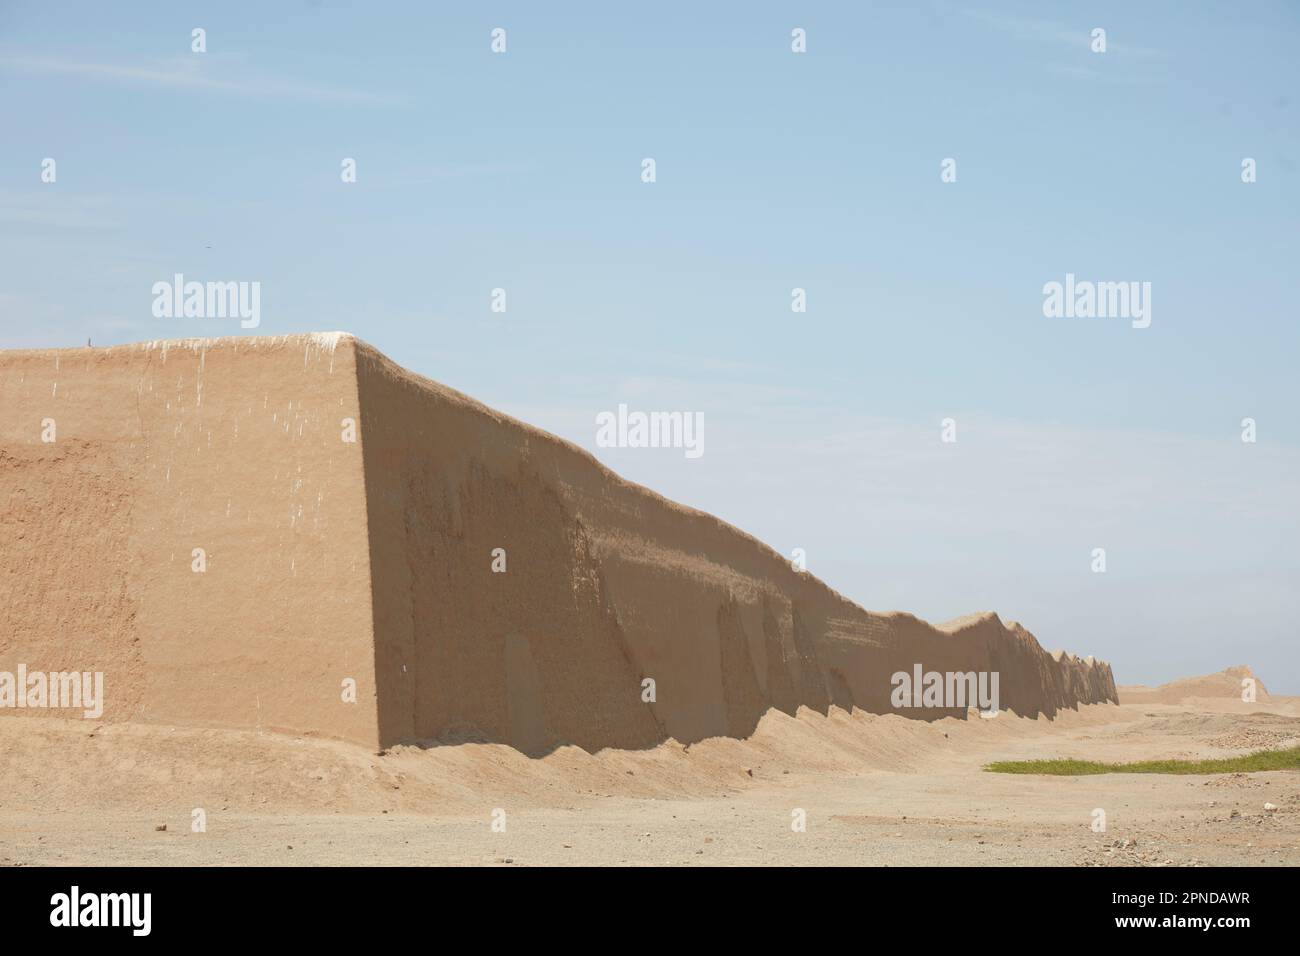 Le mur de la forteresse archéologique précolombienne Chan Chan, Trujillo, la Libertad, Pérou, Amérique du Sud. Il a été déclaré site du patrimoine mondial de l'UNESCO. Banque D'Images